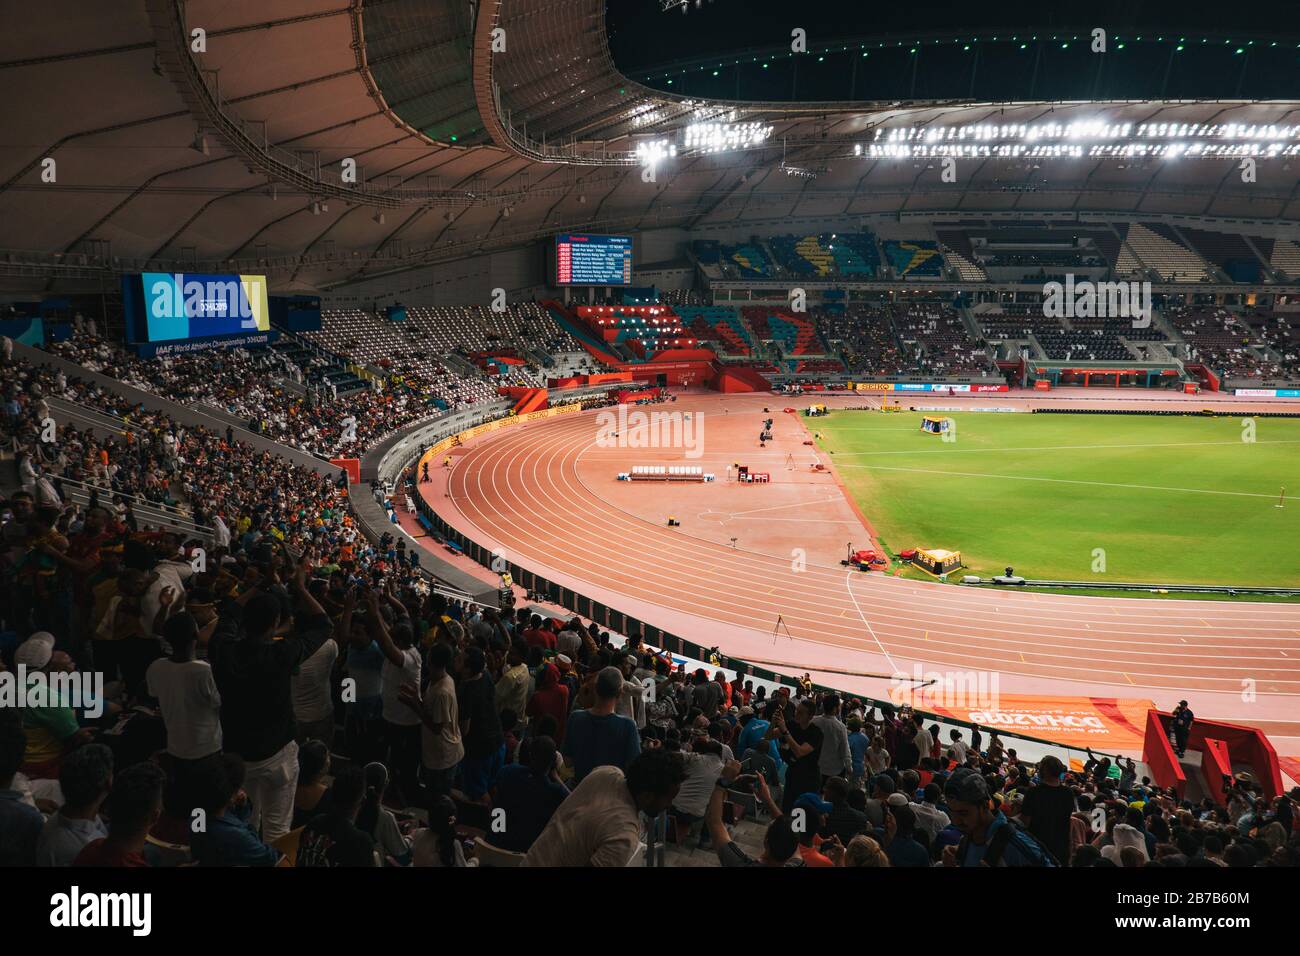 Las multitudes de espectadores ven eventos en el Campeonato Mundial de Atletismo 2019 de la IAAF en el Estadio Internacional Khalifa, Doha, Qatar Foto de stock